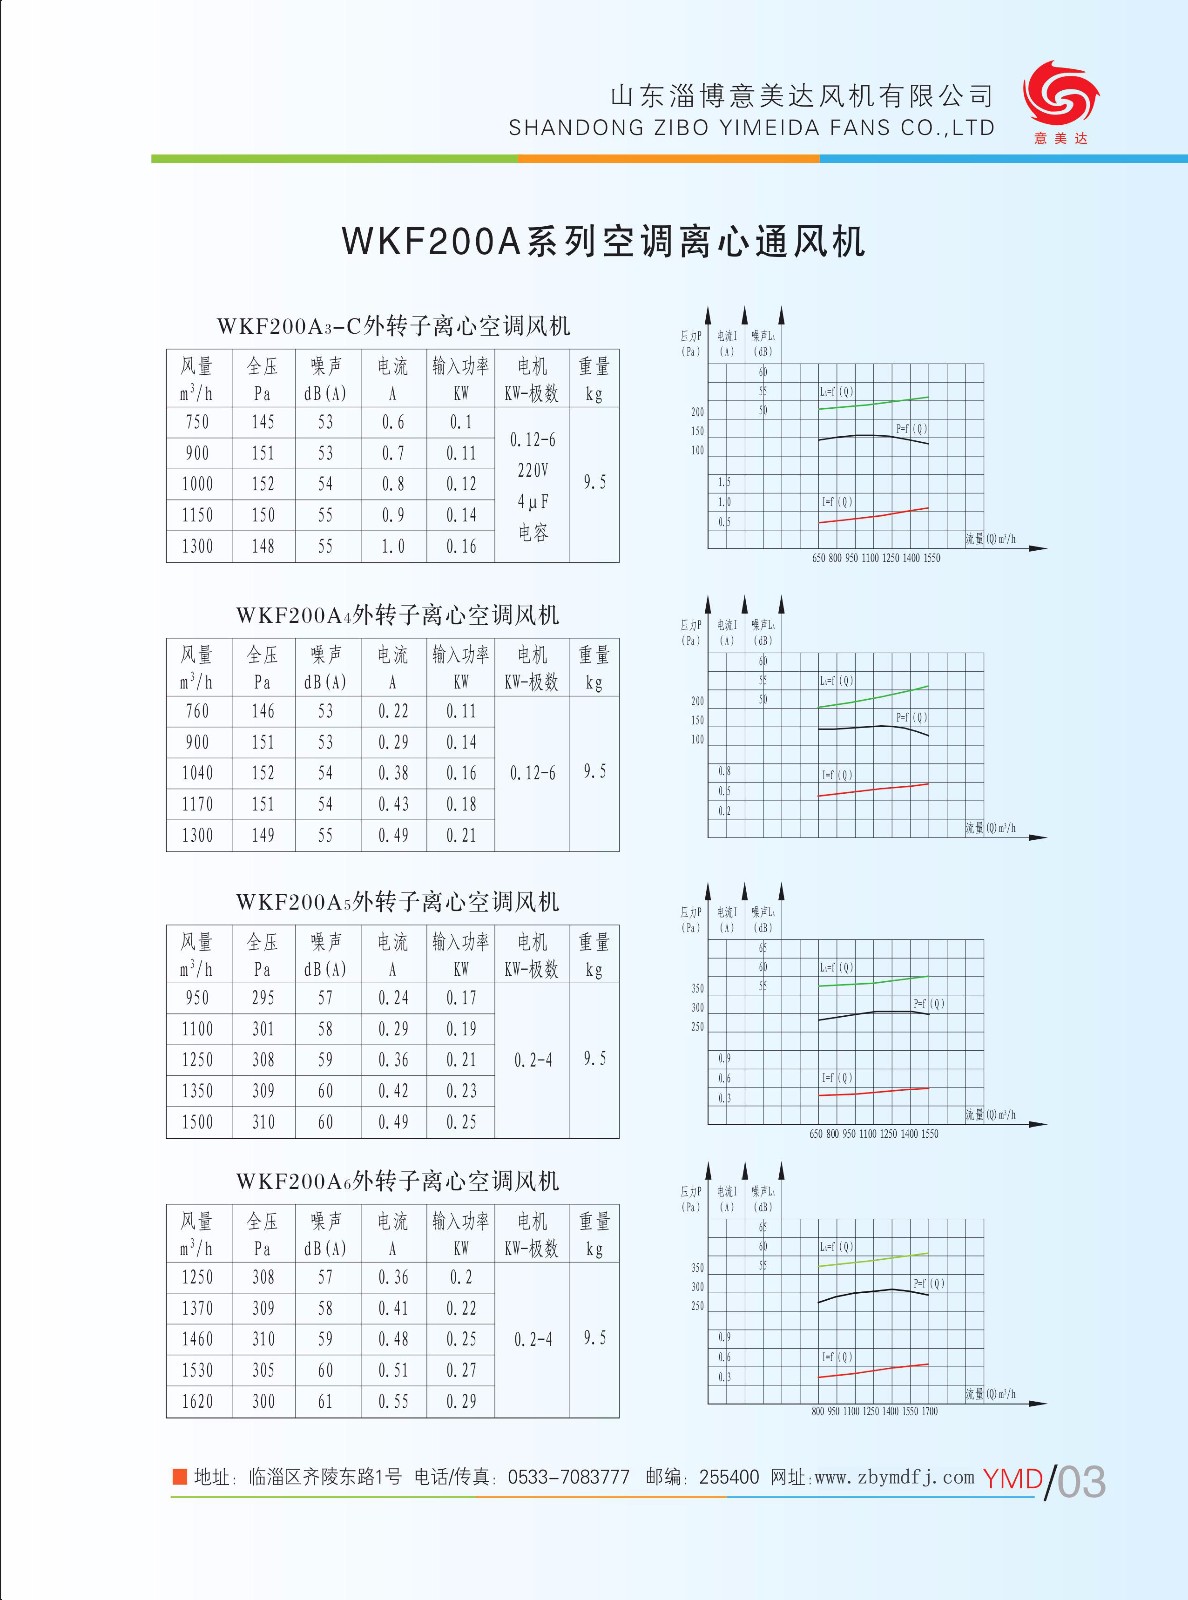 WKF200A1|WKF200A-山東淄博意美達風機有限公司